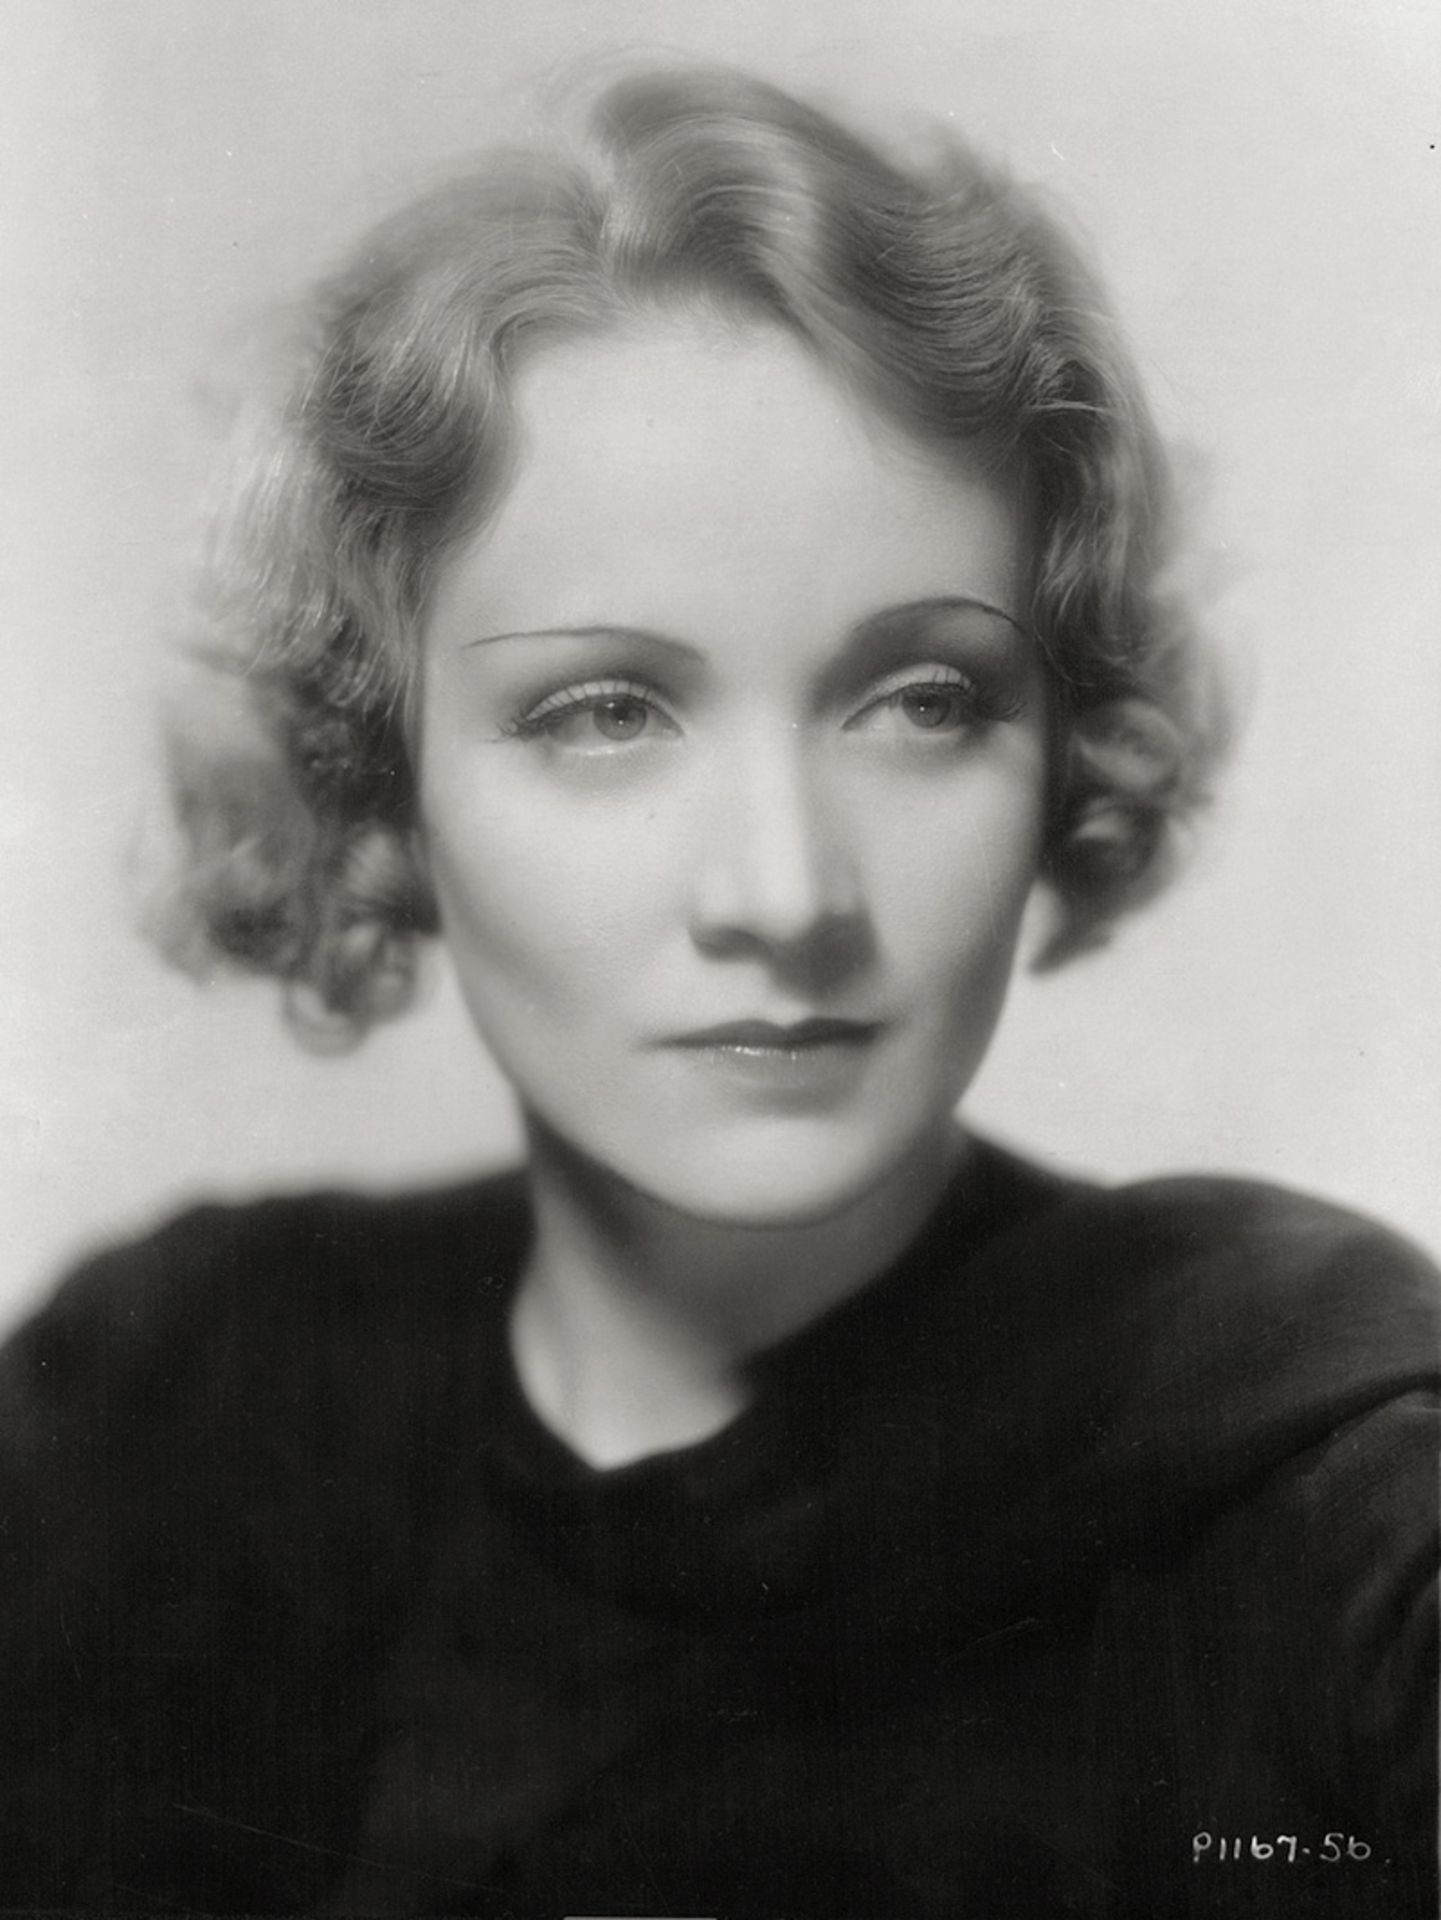 Film Photography: Marlene Dietrich